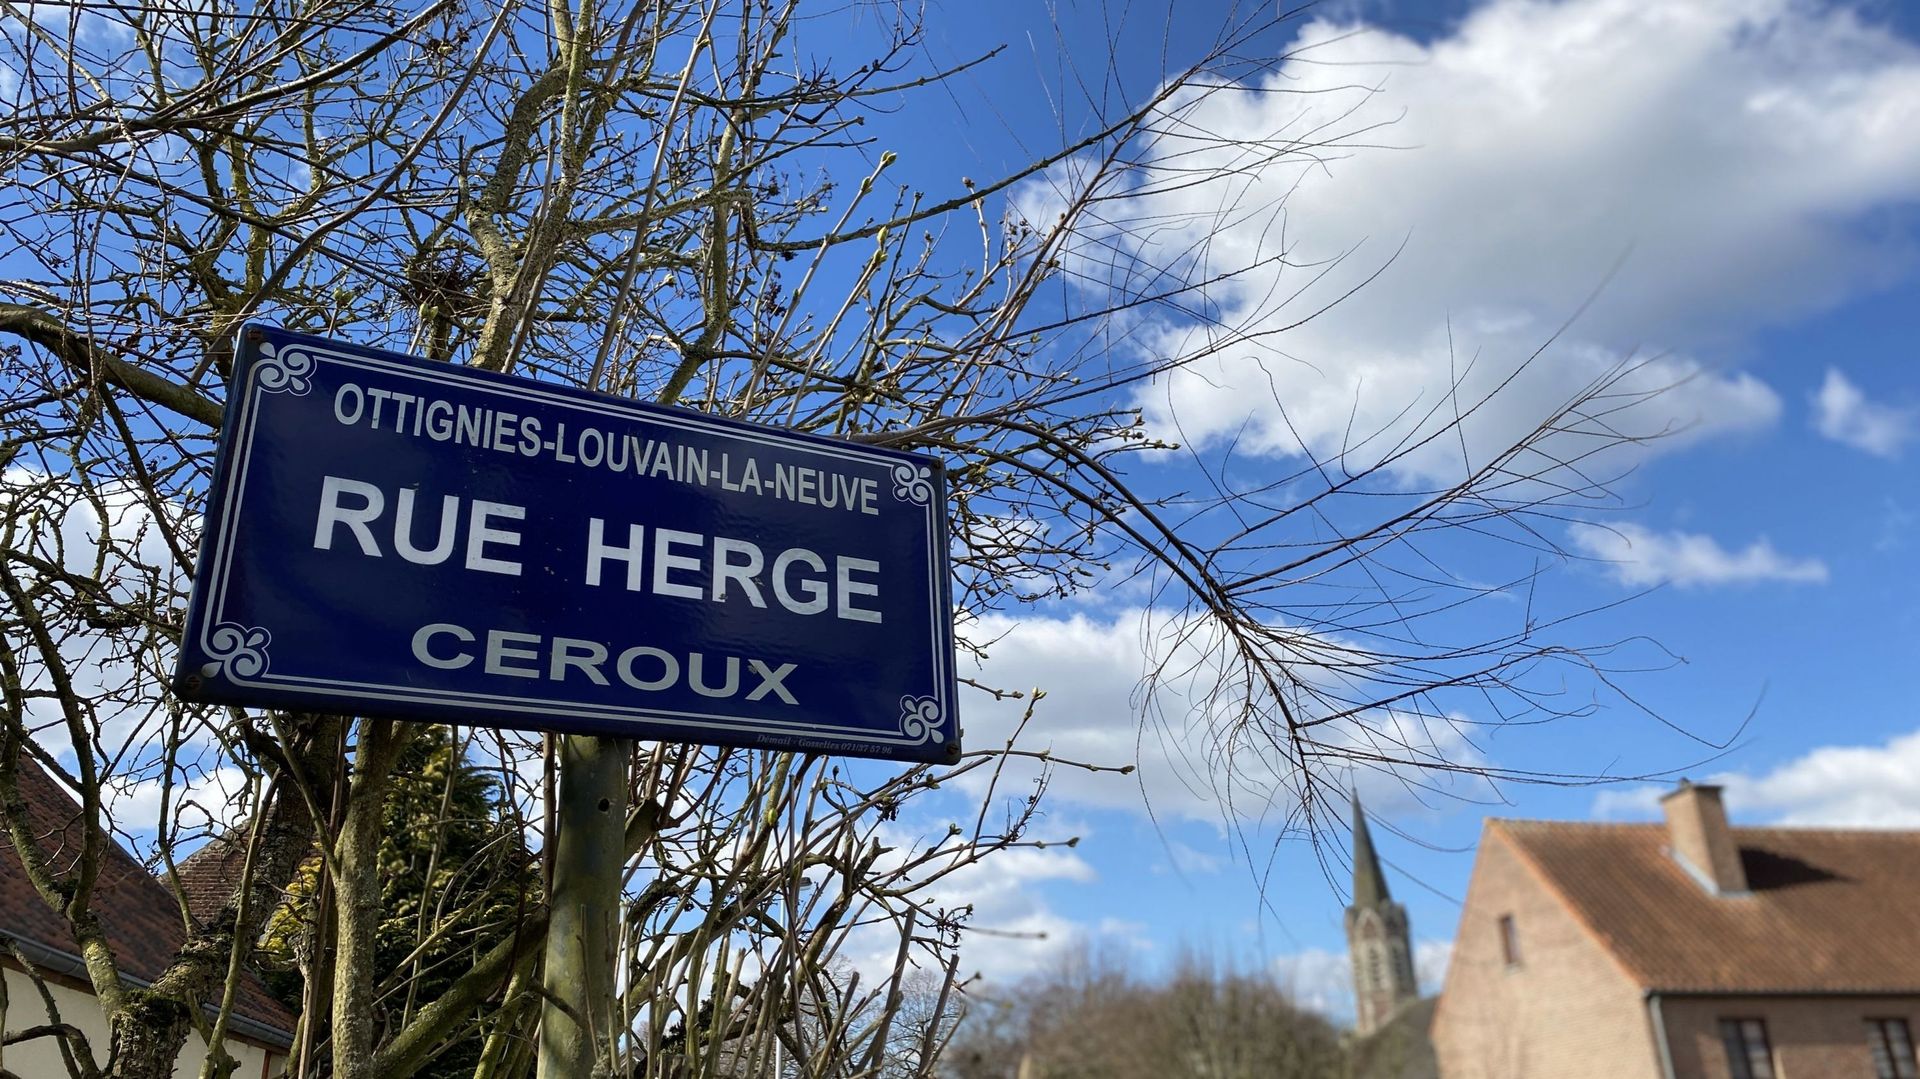 La rue où Hergé a habité porte aujourd’hui son nom